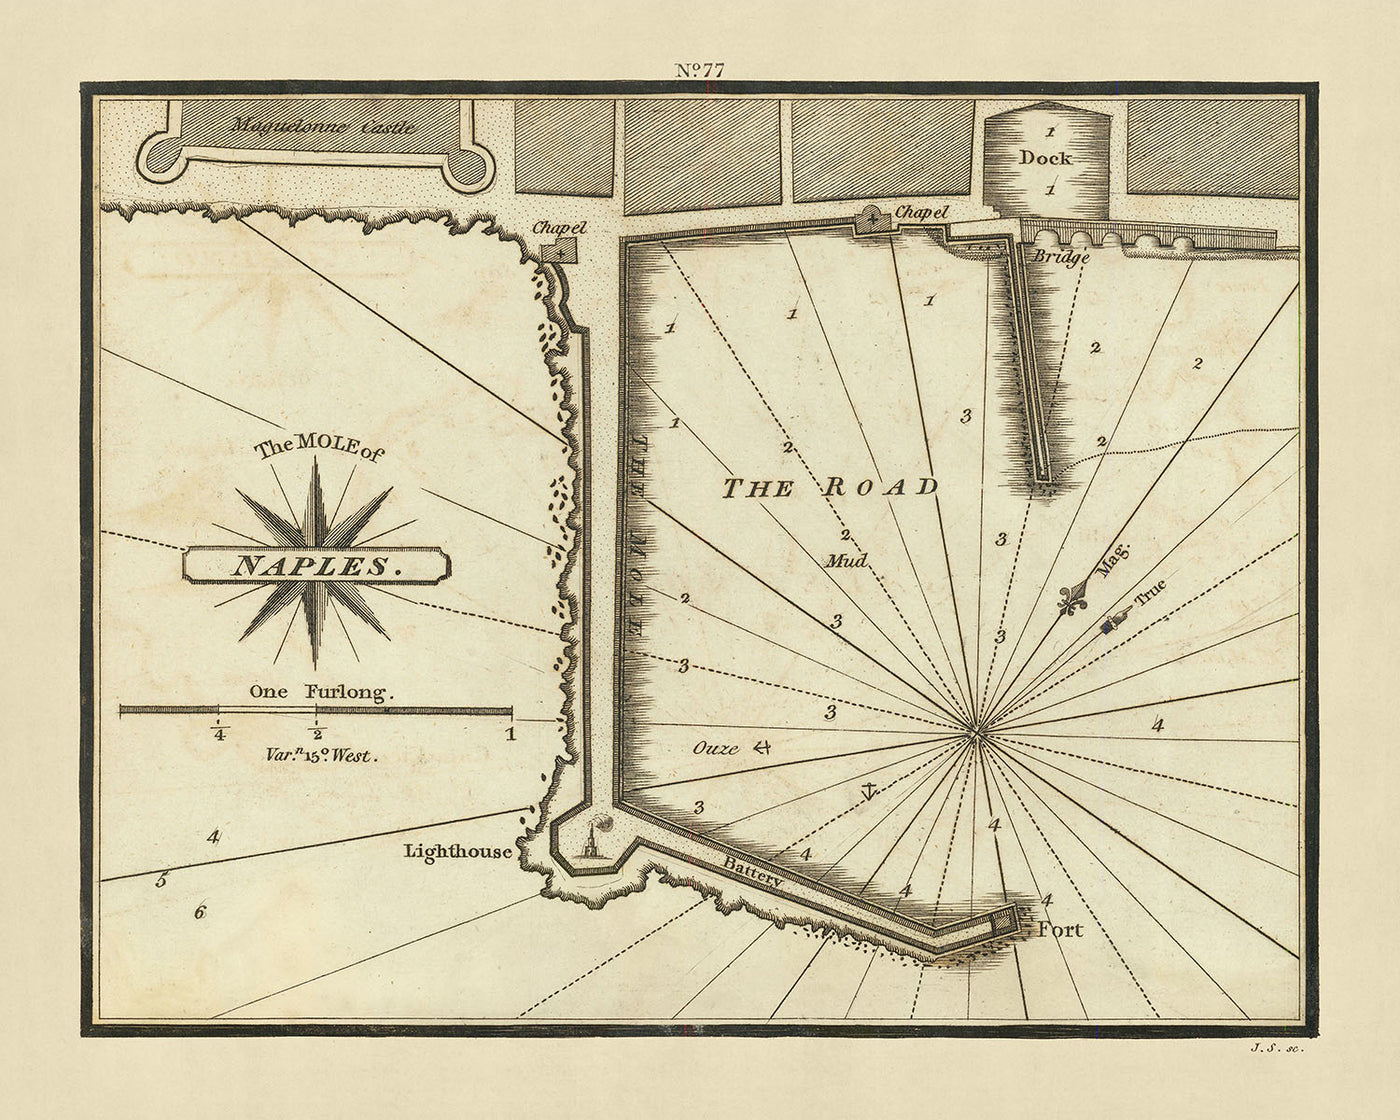 Carte nautique du vieux môle de Naples par Heather, 1802 : sondages, monuments, histoire du port